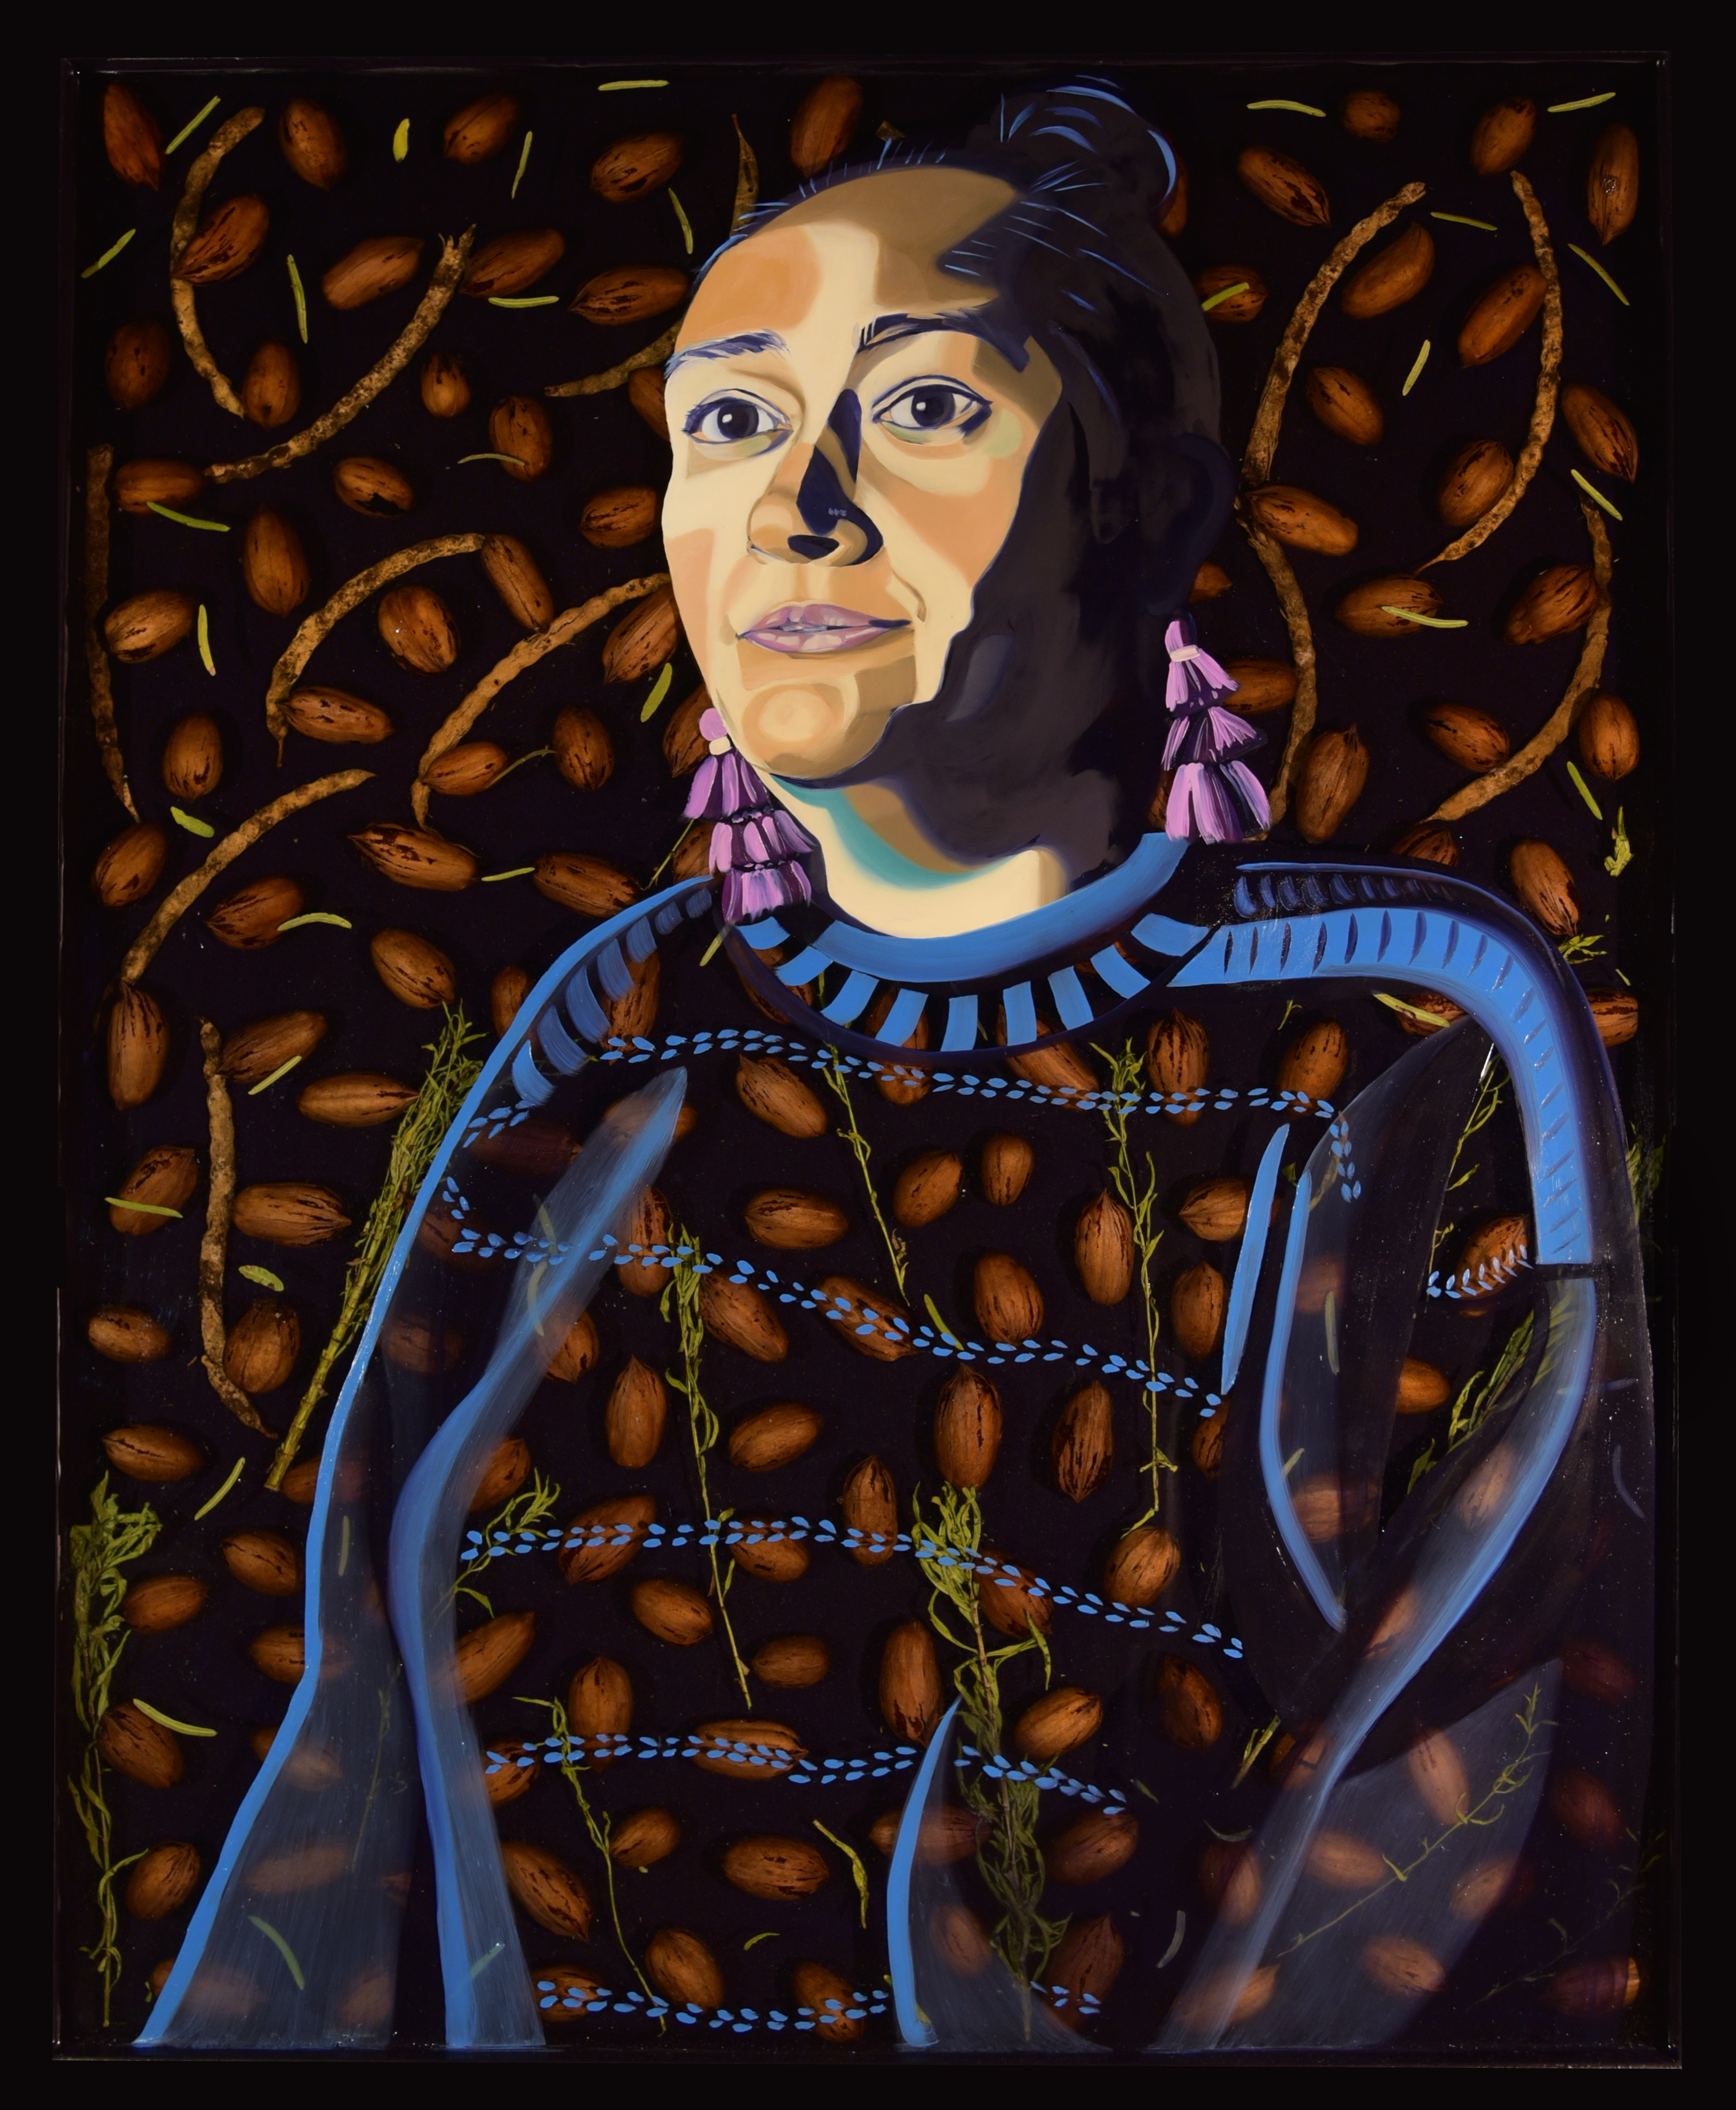 Oil painting, pecans, and mesquite pods, portrait by Suzy Gonzalez